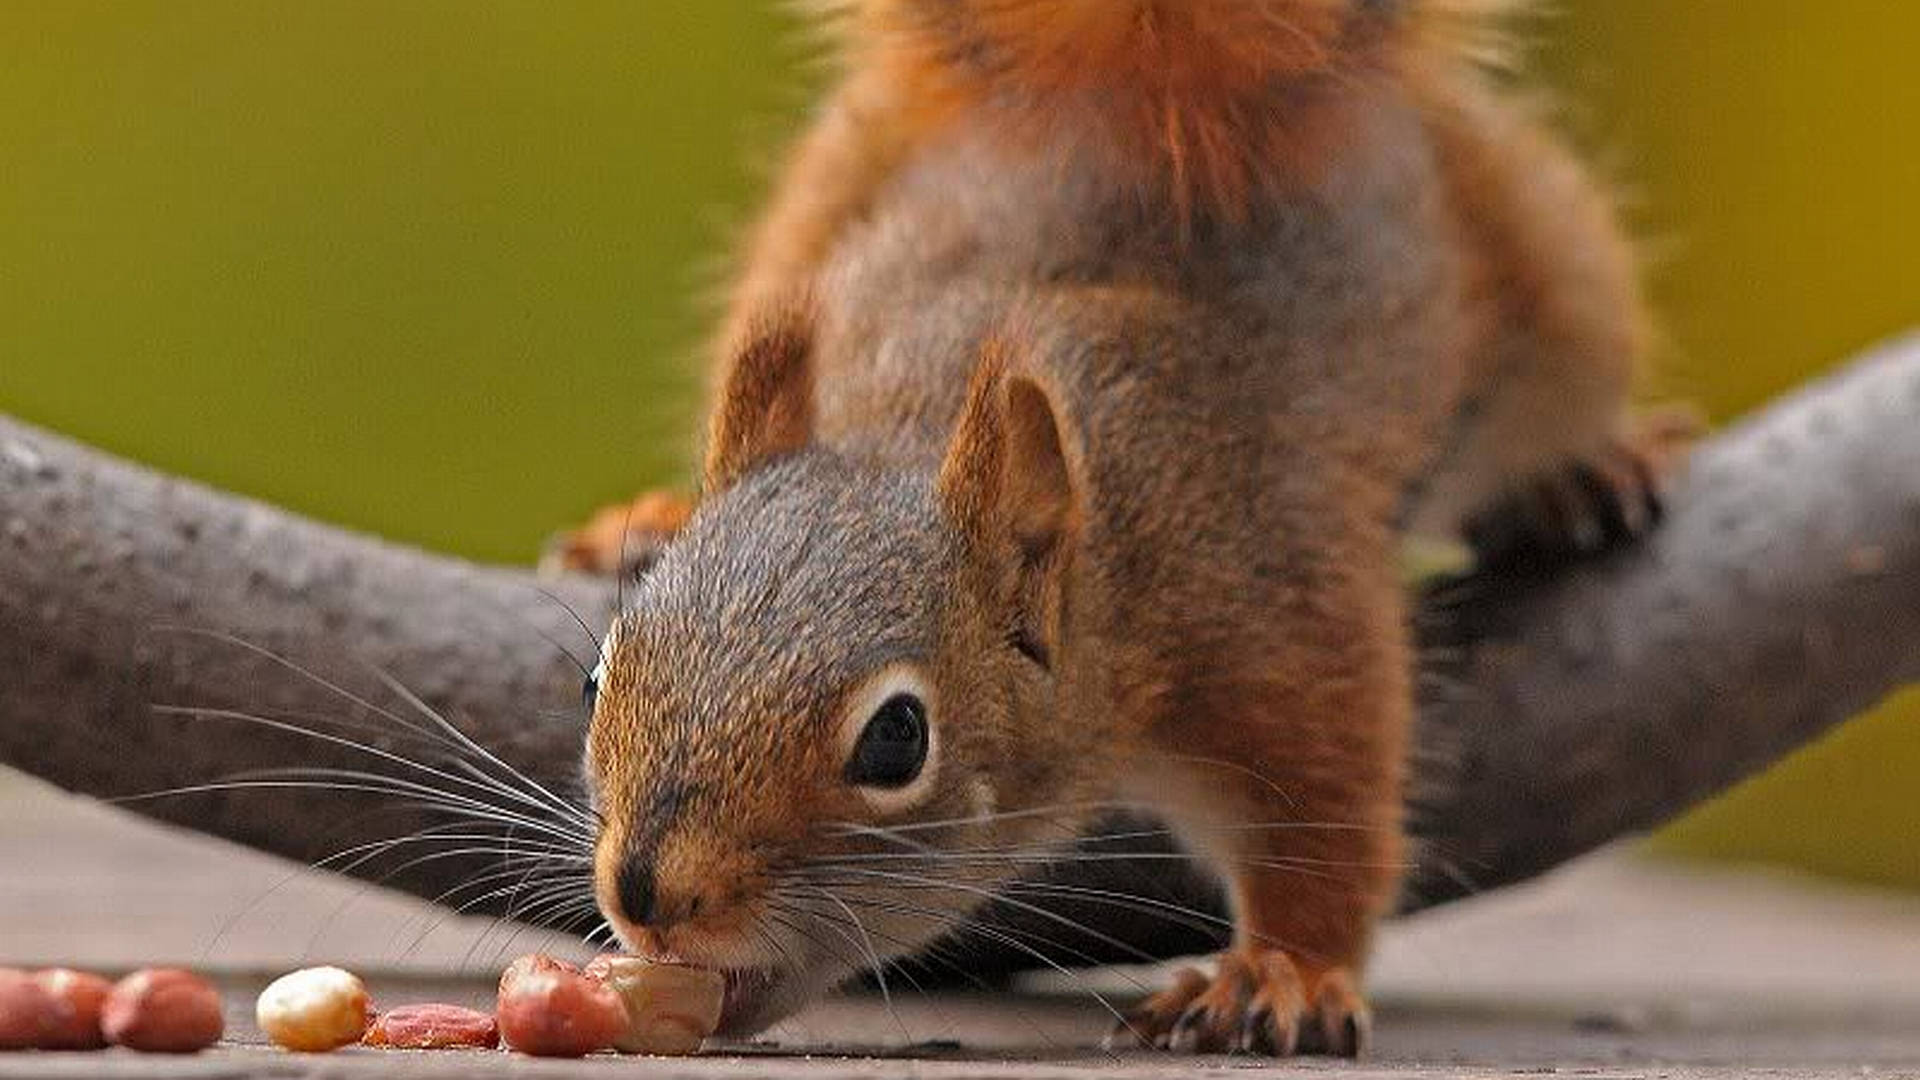 Squirrel Biting Peanut